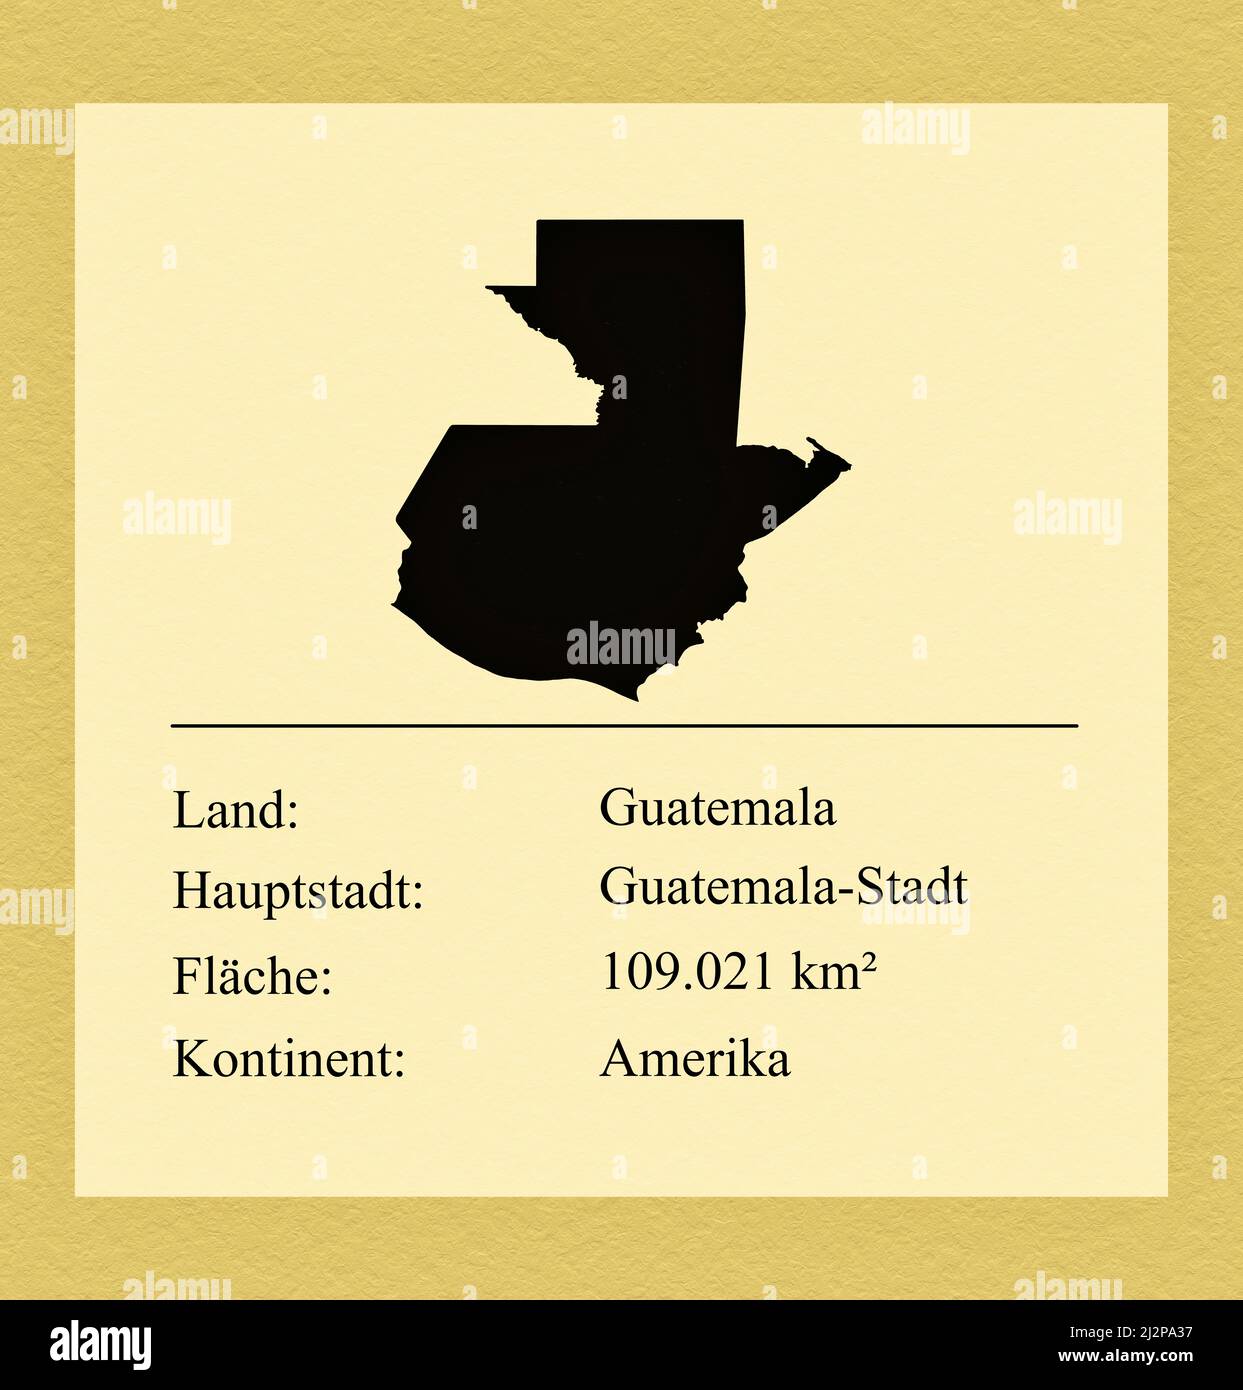 Umrisse des Landes Guatemala, darunter ein kleiner Steckbrief mit Ländernamen, Hauptstadt, Fläche und Kontinent Foto de stock